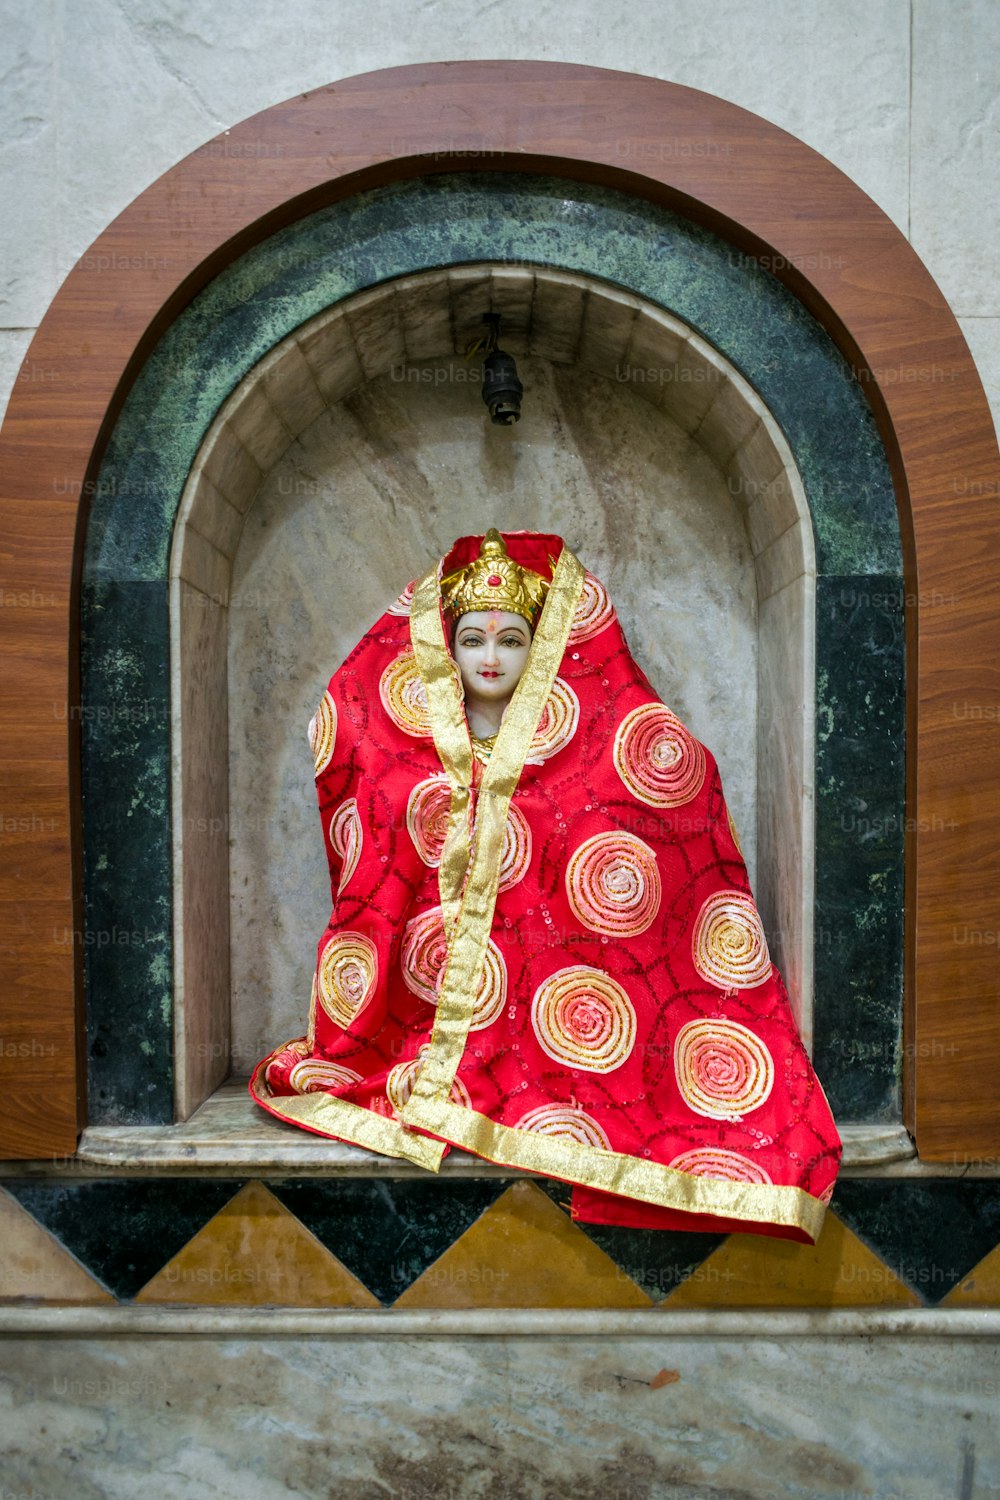 Una estatua de una mujer vestida con un traje rojo y dorado